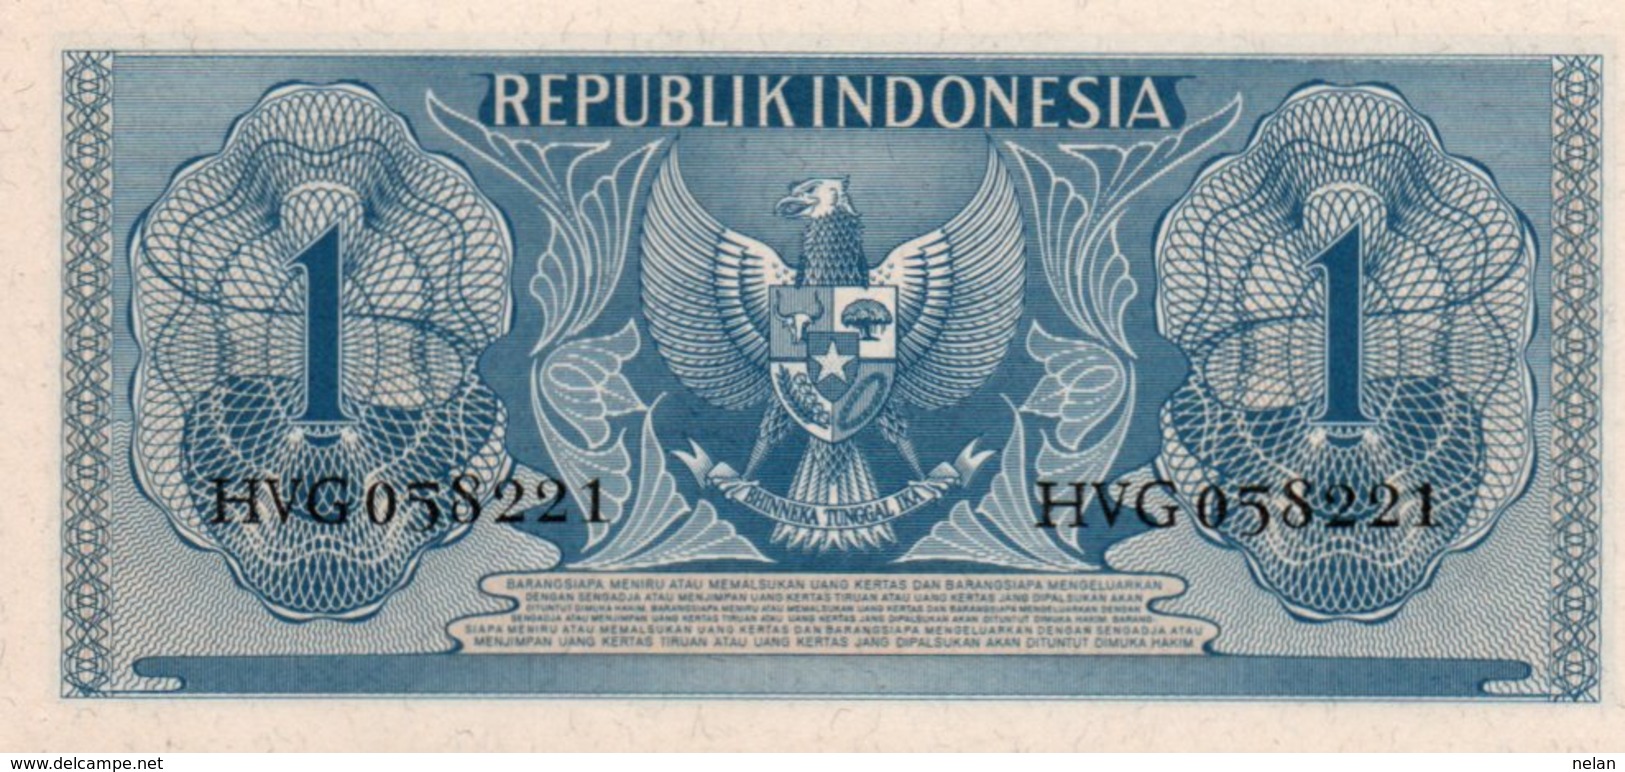 INDONESIA 1 RUPIAH  1956 P-74 UNC - Indonesia